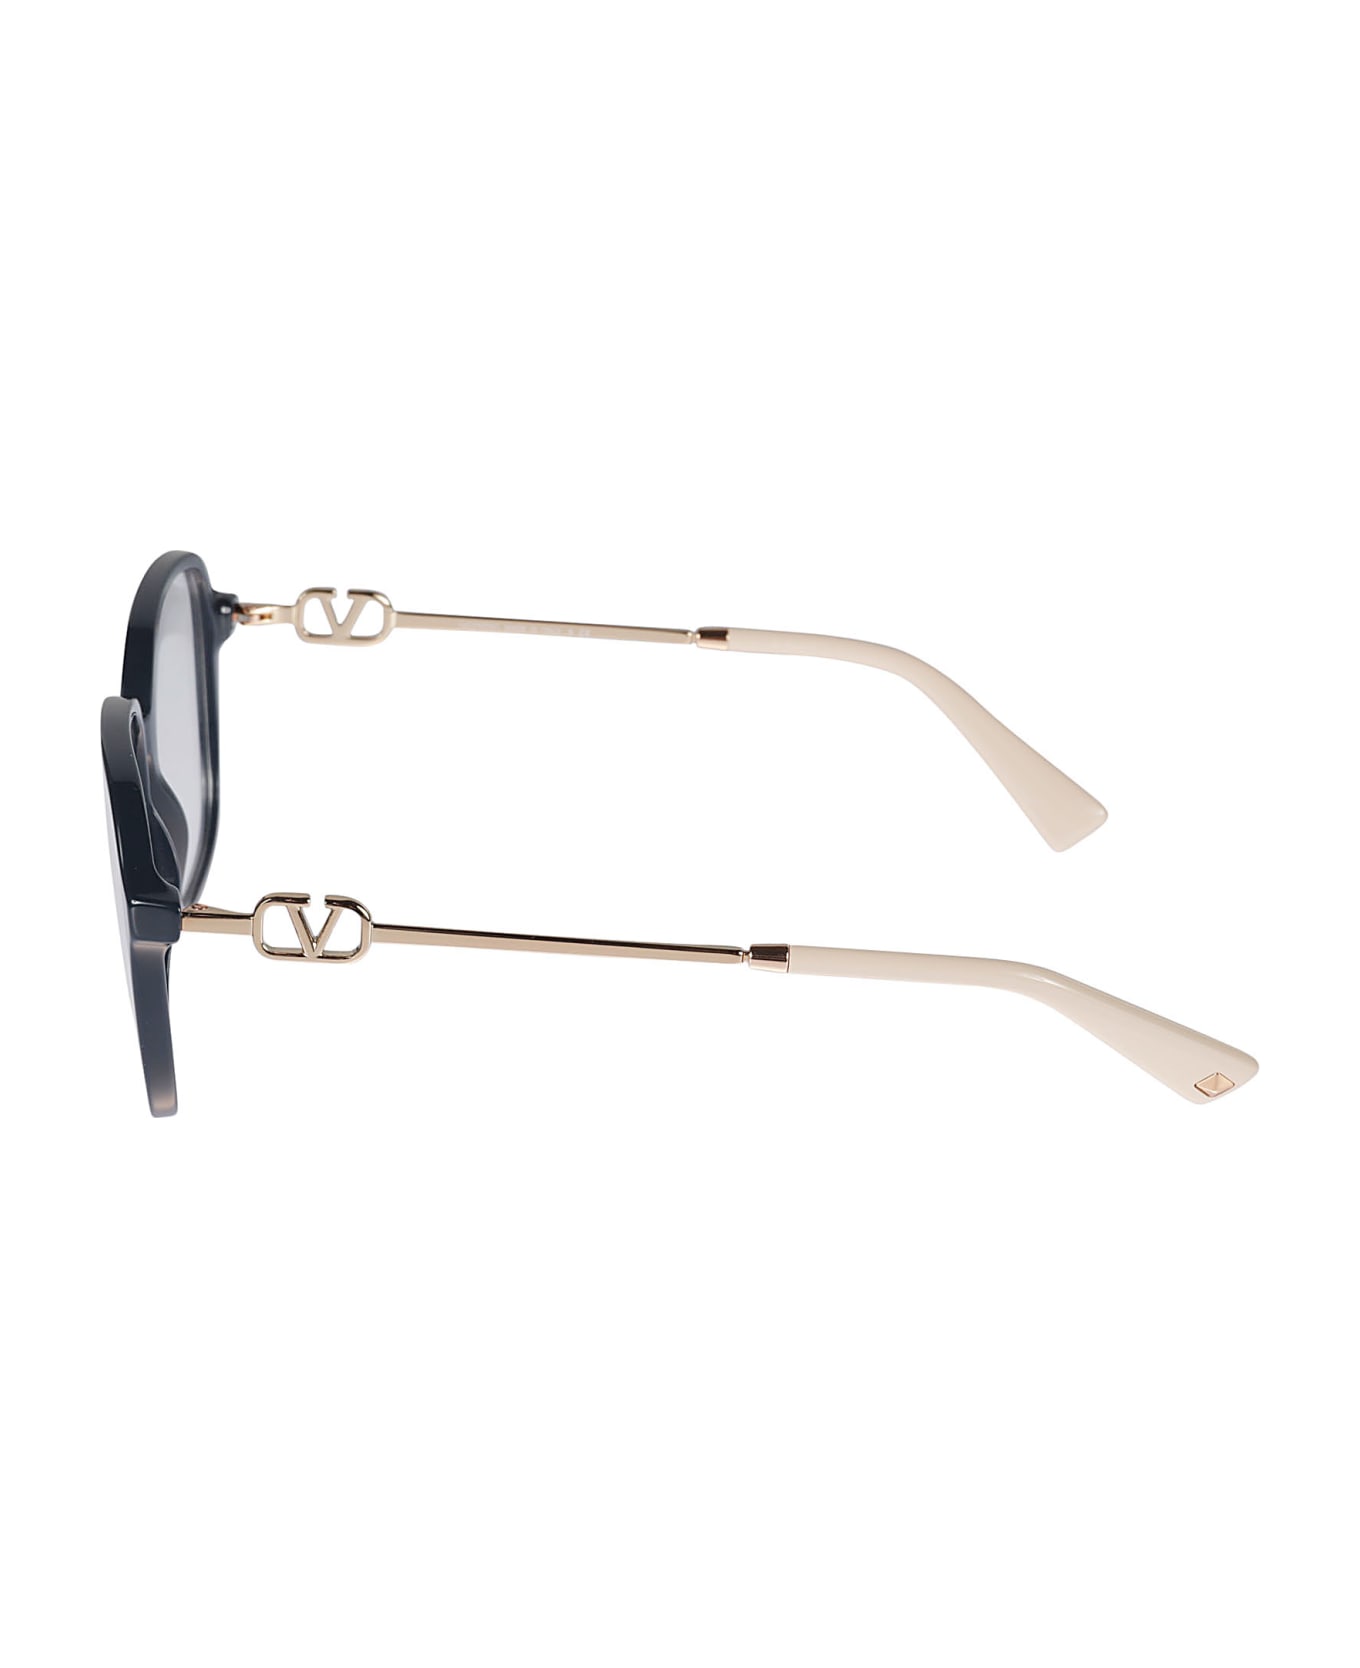 Valentino Eyewear Vista5034 Glasses - 5034 アイウェア